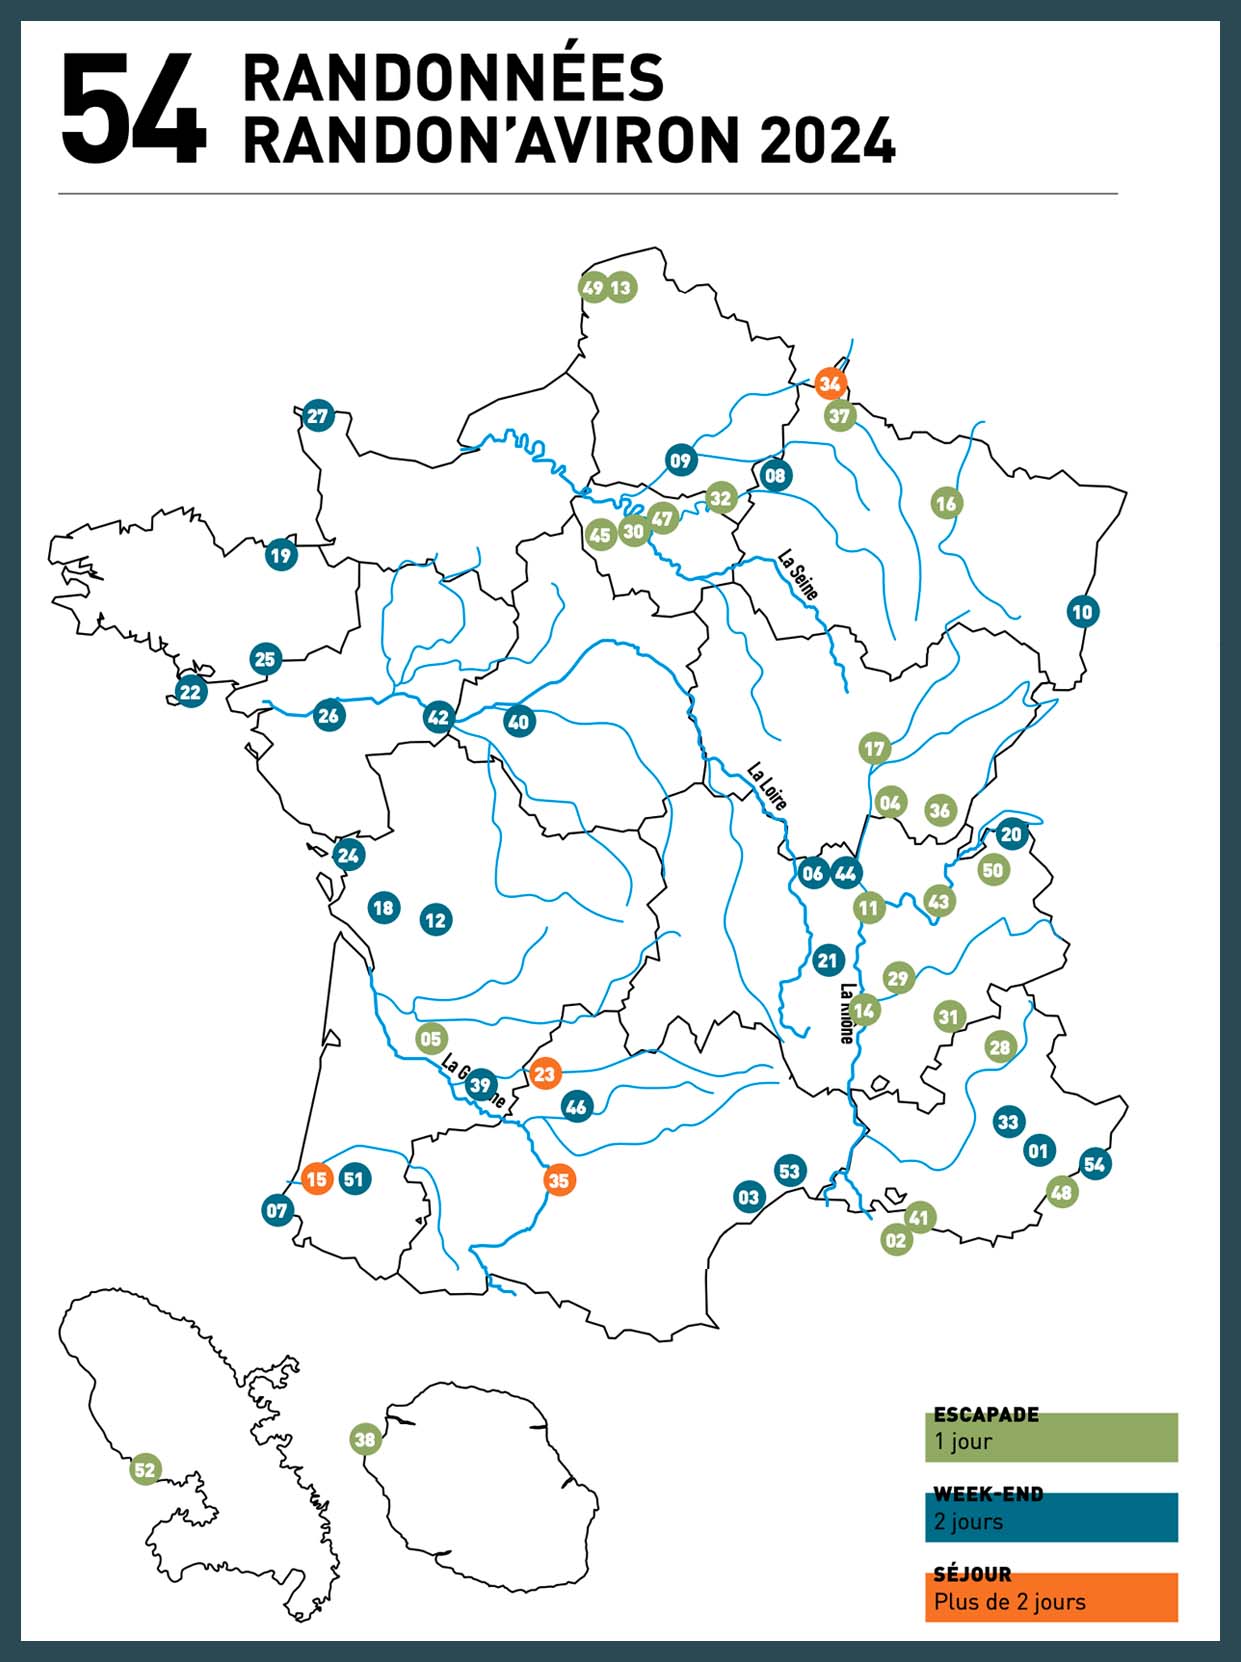 Carte de toutes les randonnées aviron de France 